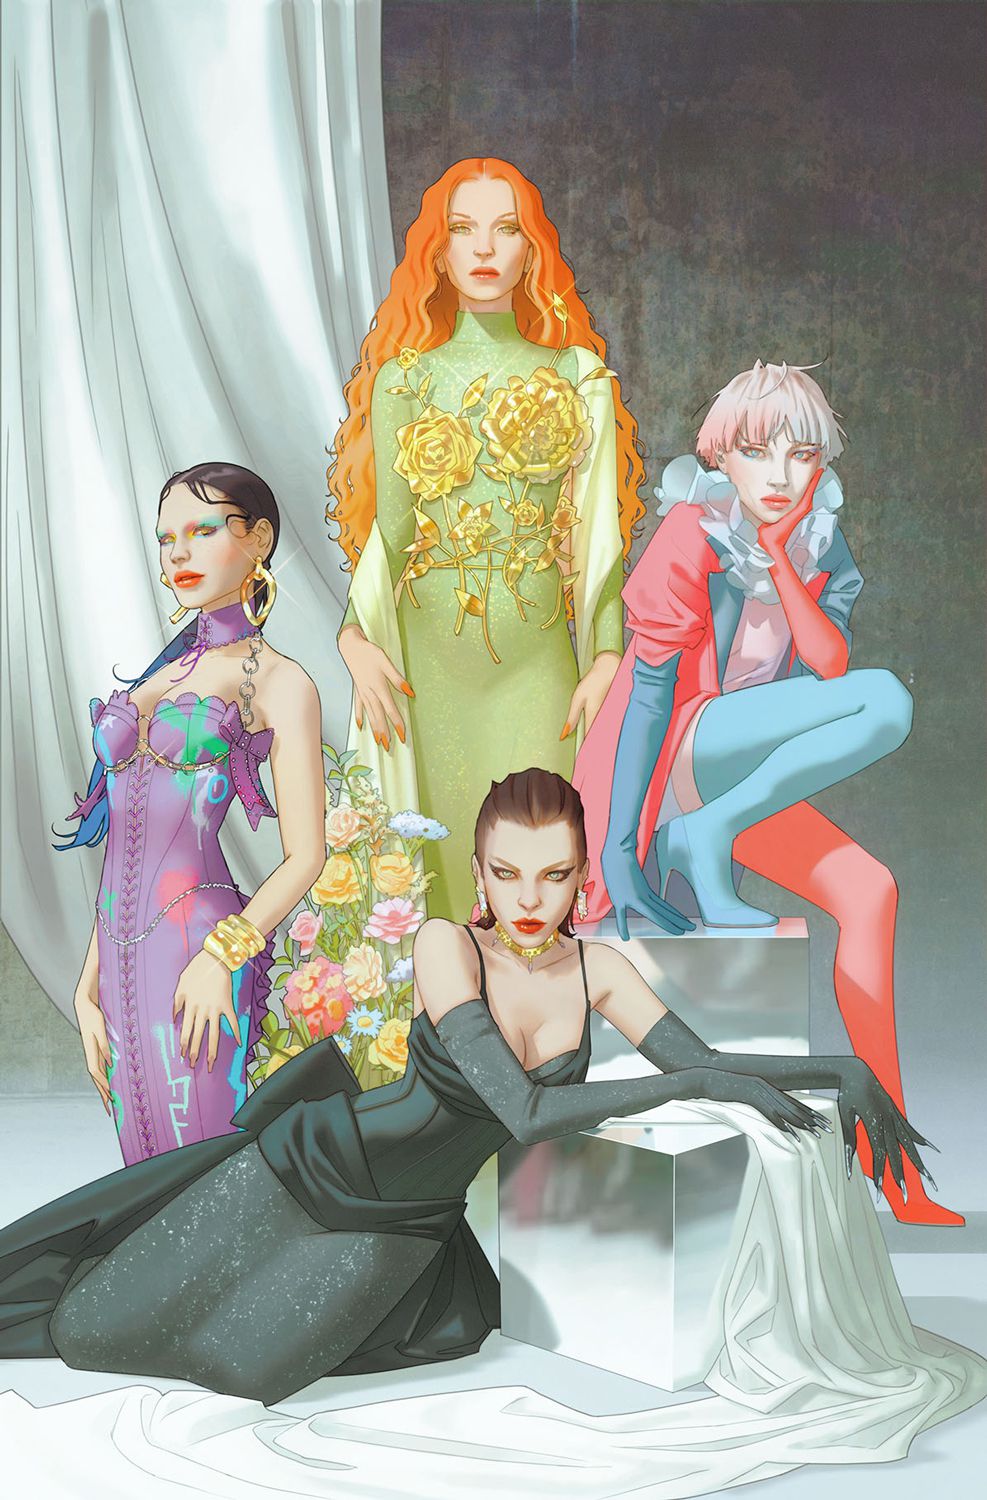 Punchline, Poison Ivy, Harley Quin i Catwoman pozują w odpowiednich tematycznie ubraniach na okładce Gotham City Sirens.